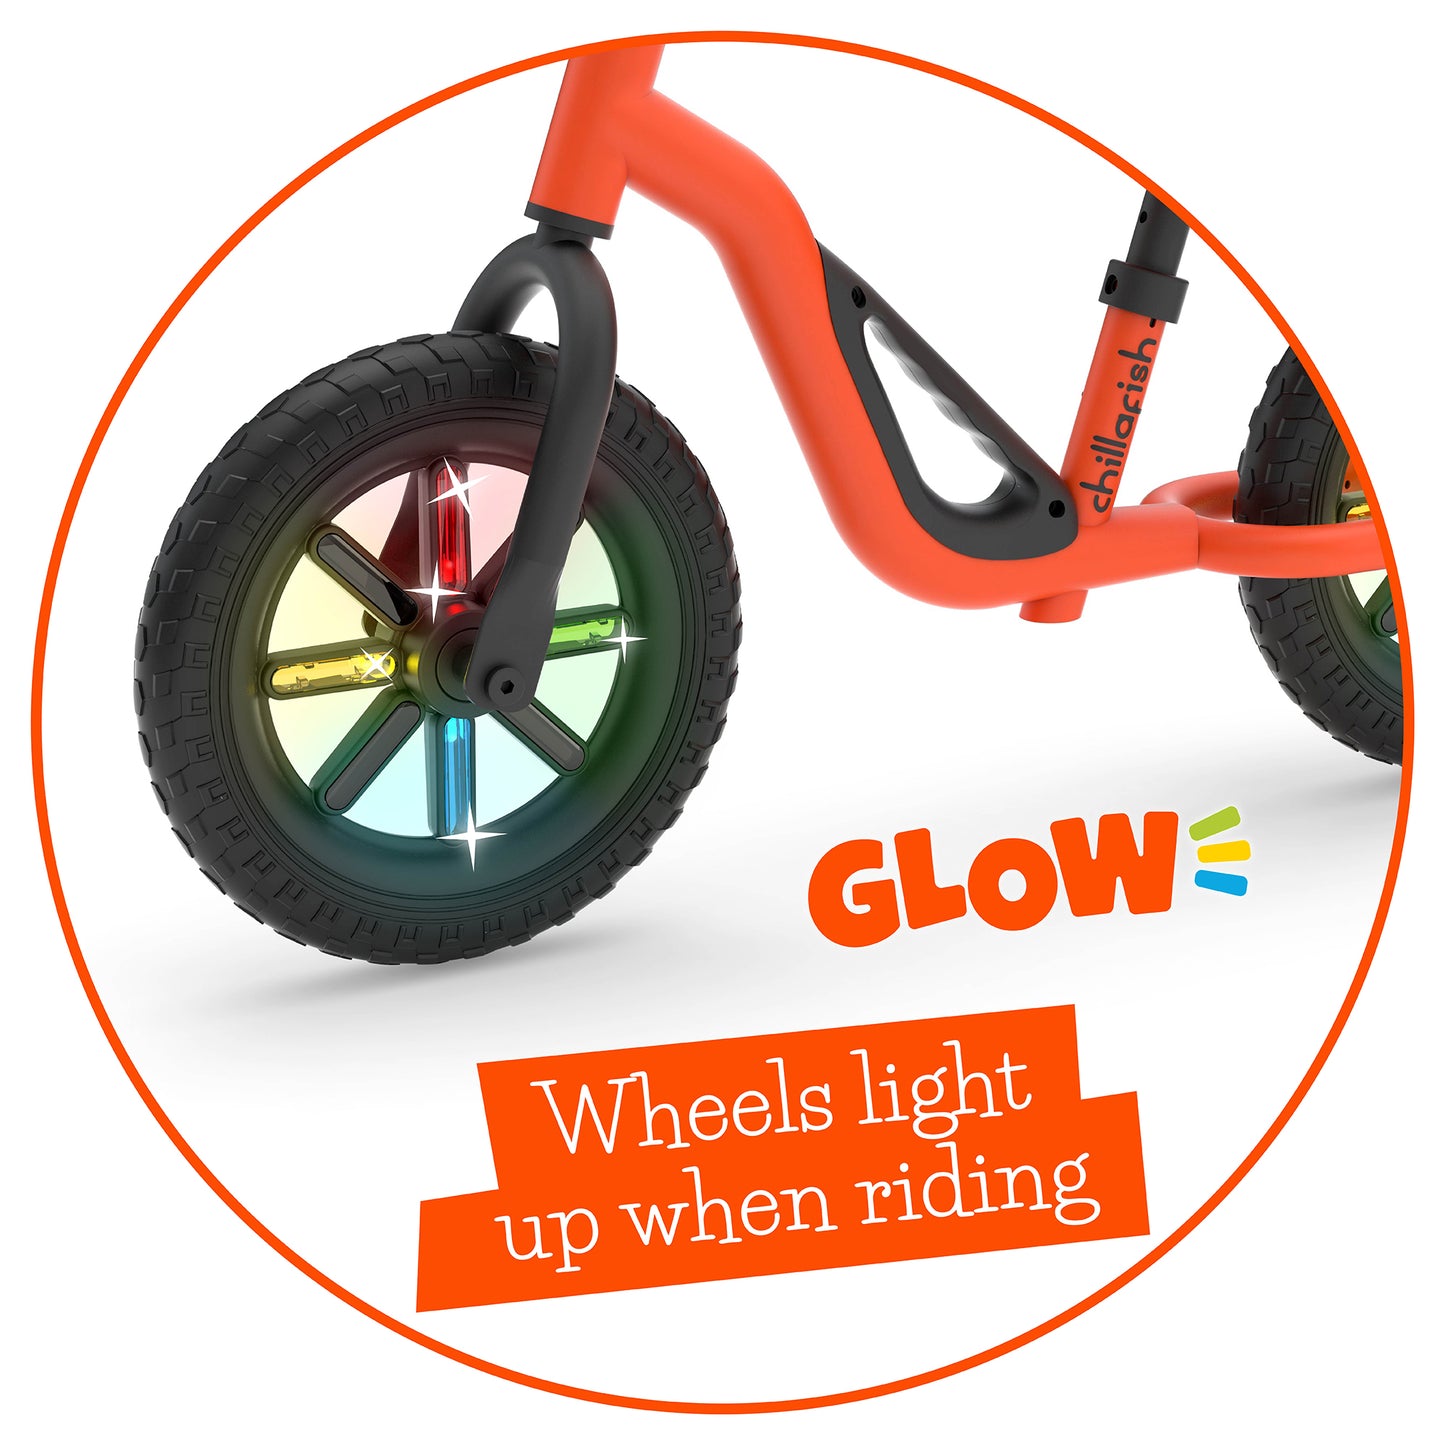 Leichtes Laufrad Charlie mit leuchtenden Rädern, Tragegriff, verstellbarem Sitz und Lenker sowie pannensicheren 10-Zoll-Reifen